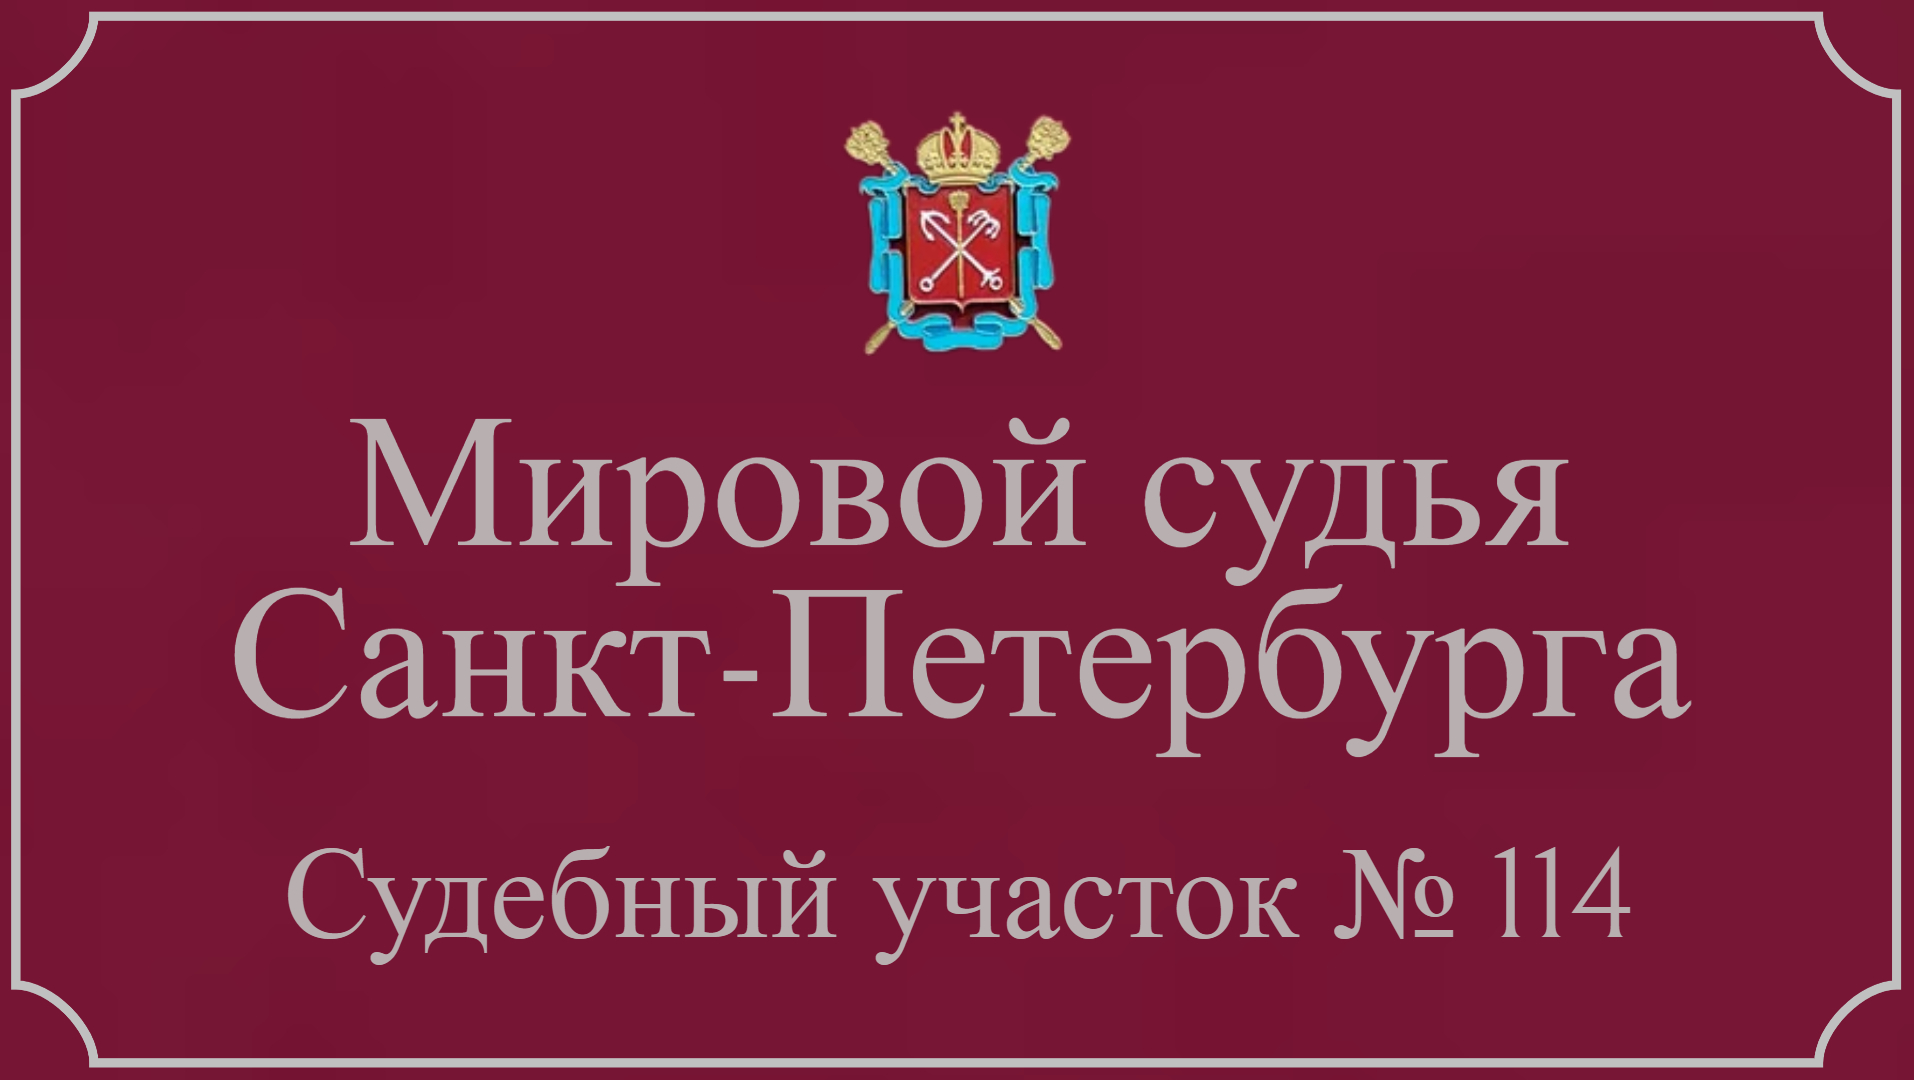 Информация по 114 судебному участку Санкт-Петербурга в г. Ломоносов.